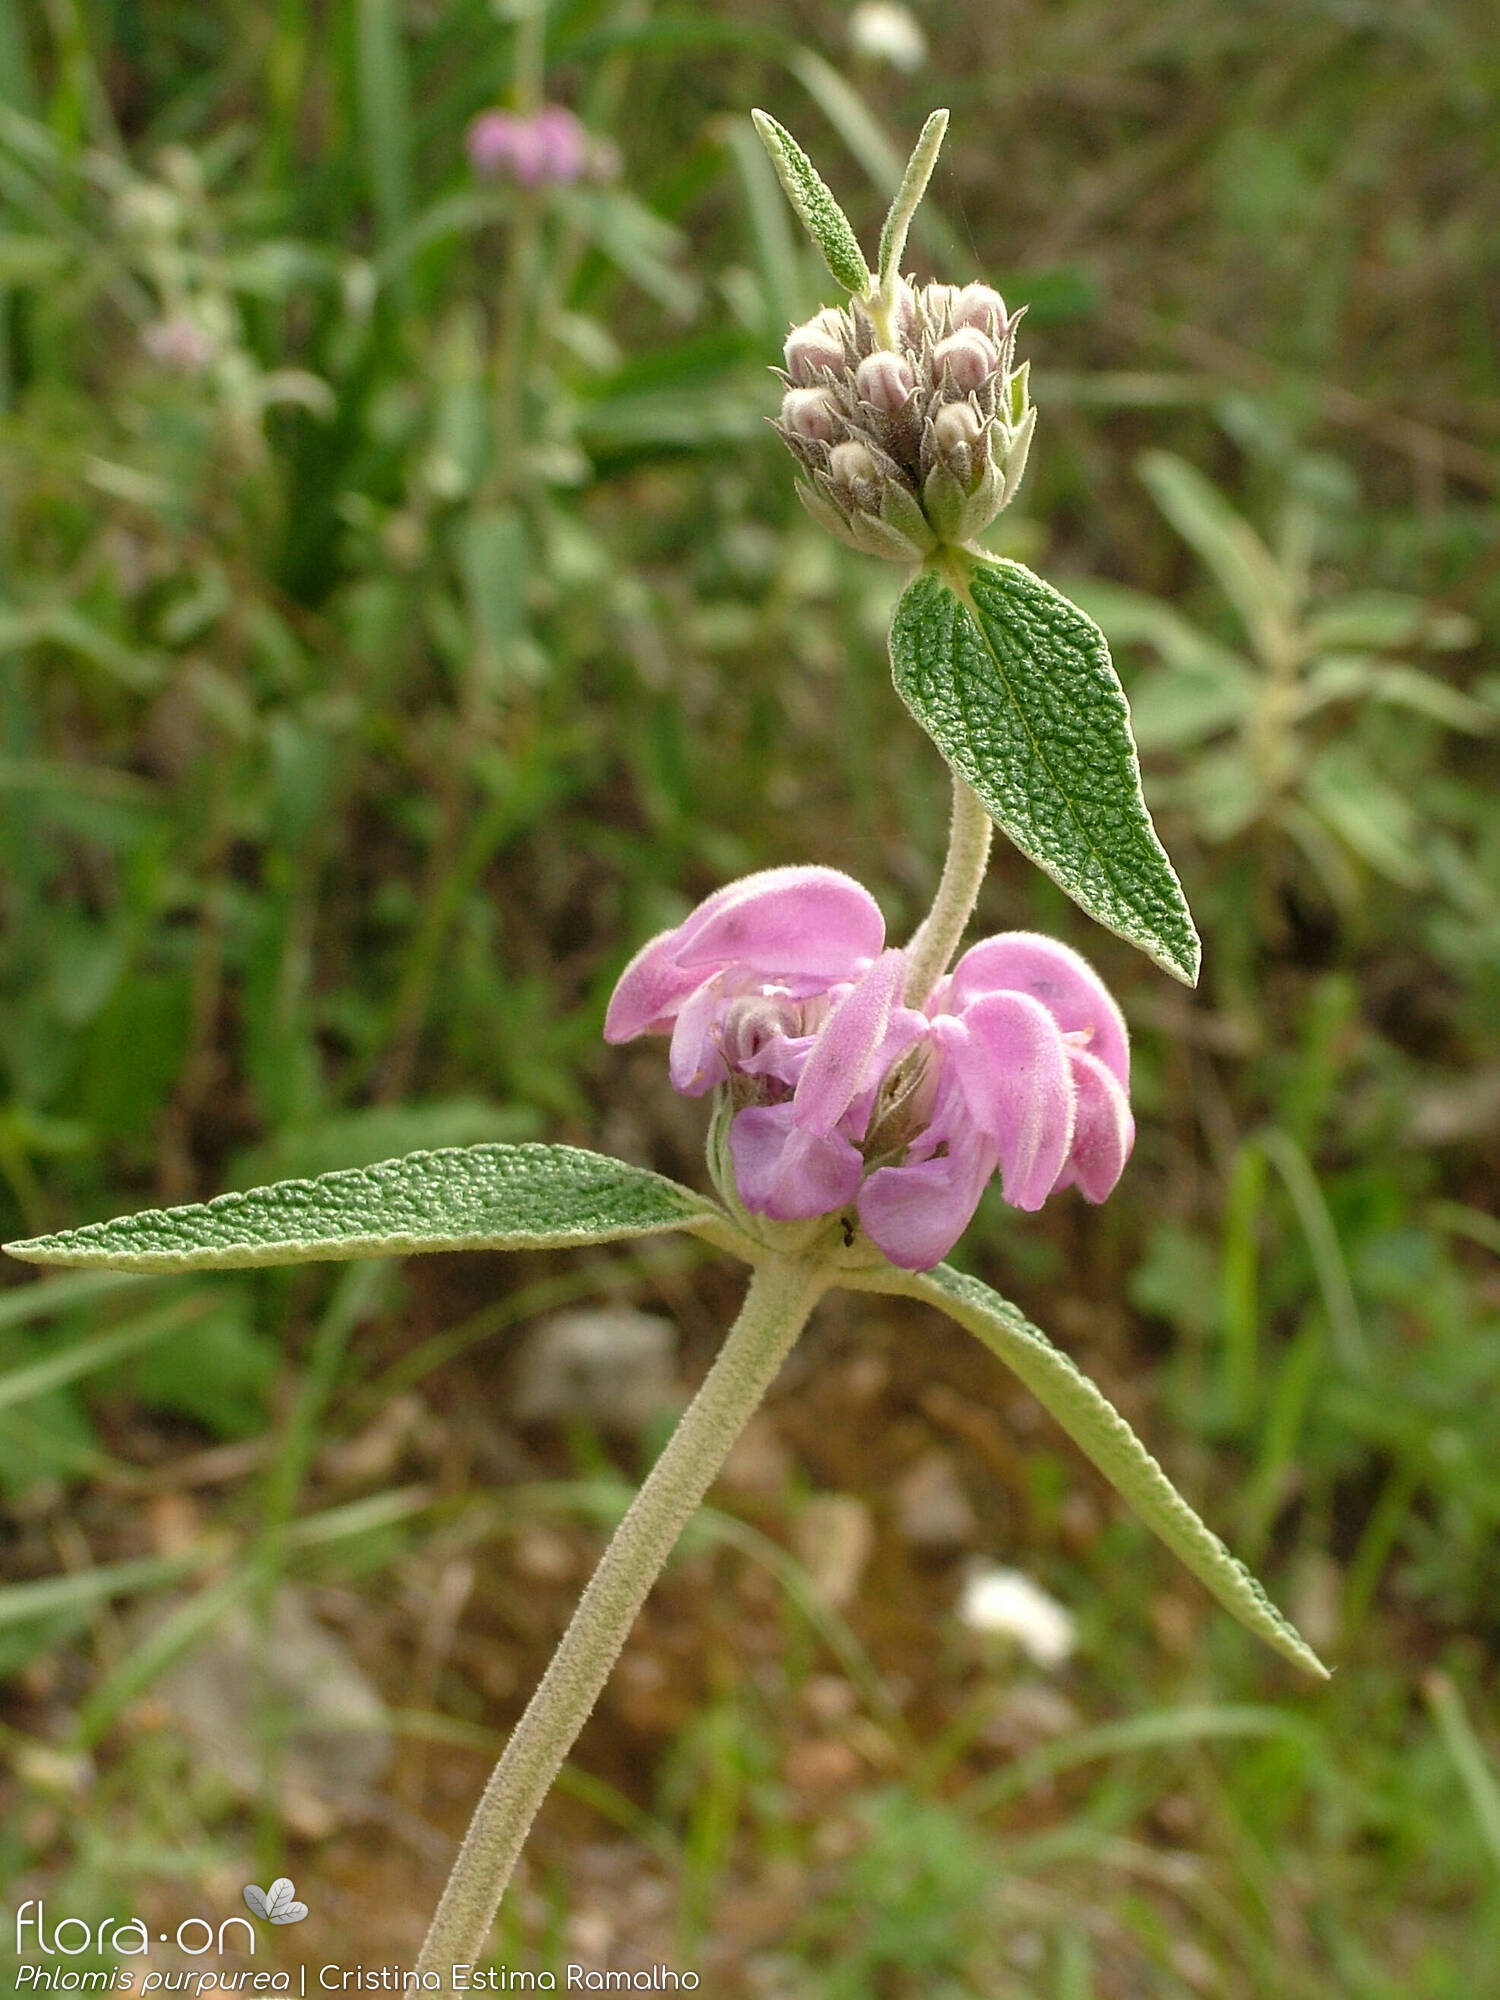 Phlomis purpurea - Flor (geral) | Cristina Estima Ramalho; CC BY-NC 4.0